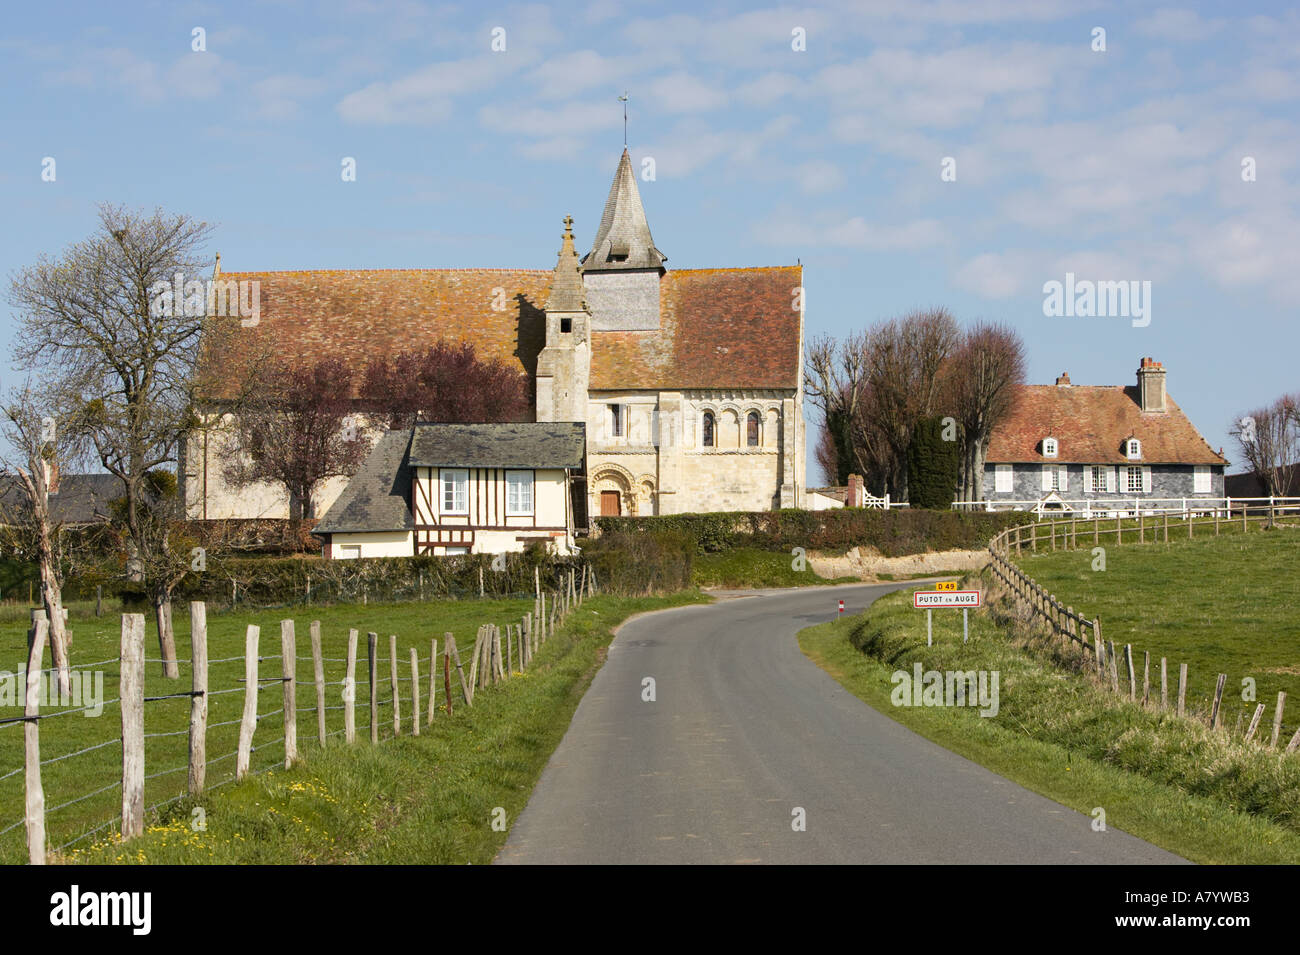 Putot en Auge village and church, Pays d'Auge region, Calvados, Normandy, France Stock Photo